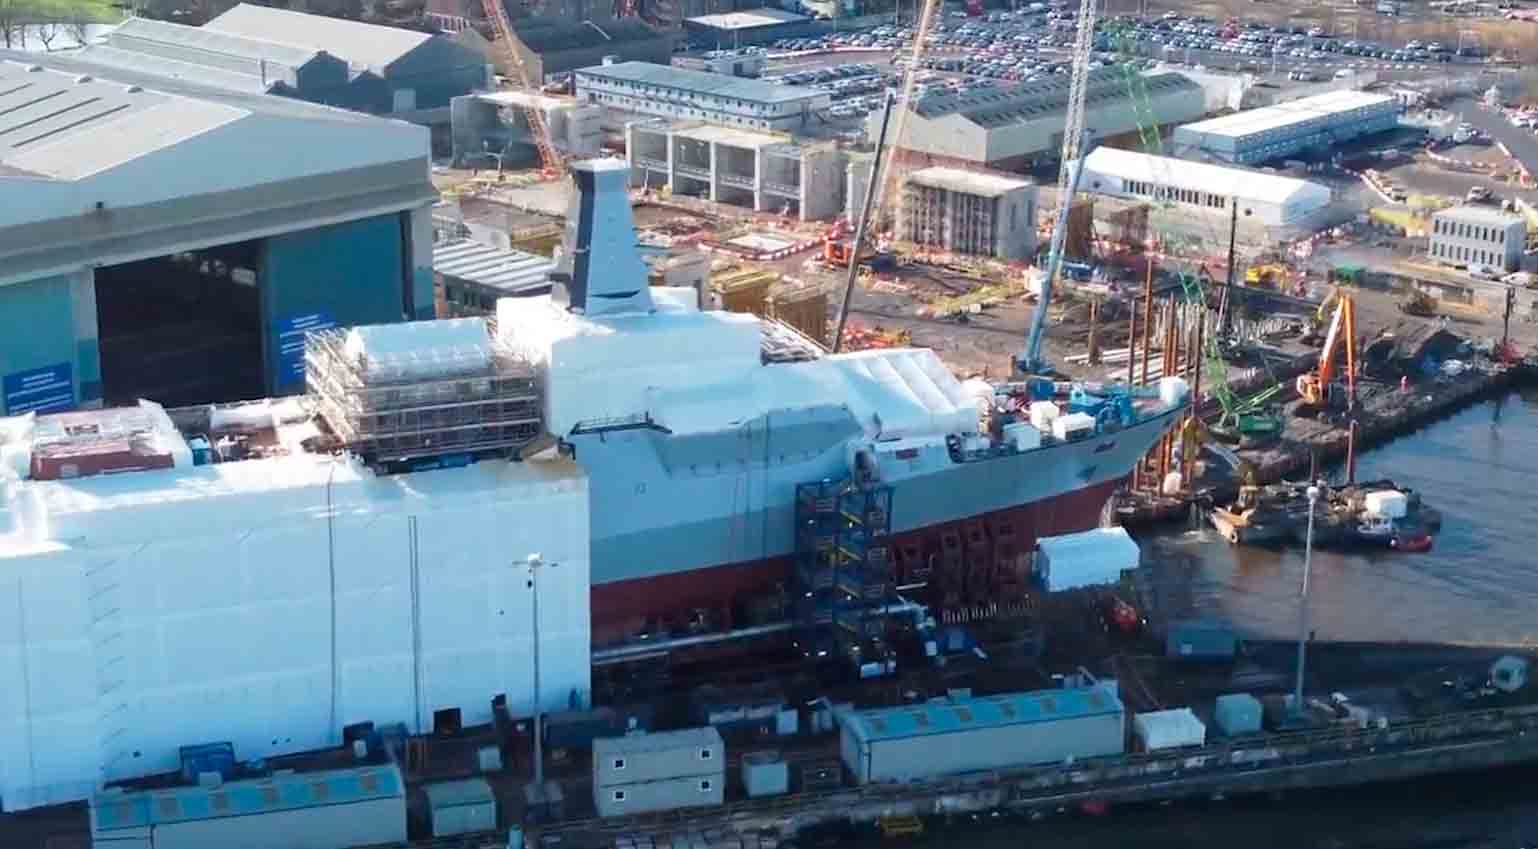 Vídeo: Drone mostra construção da nova fragata Type 26 em Glasgow. Vídeo e fotos : Reprodução Twitter @geoallison